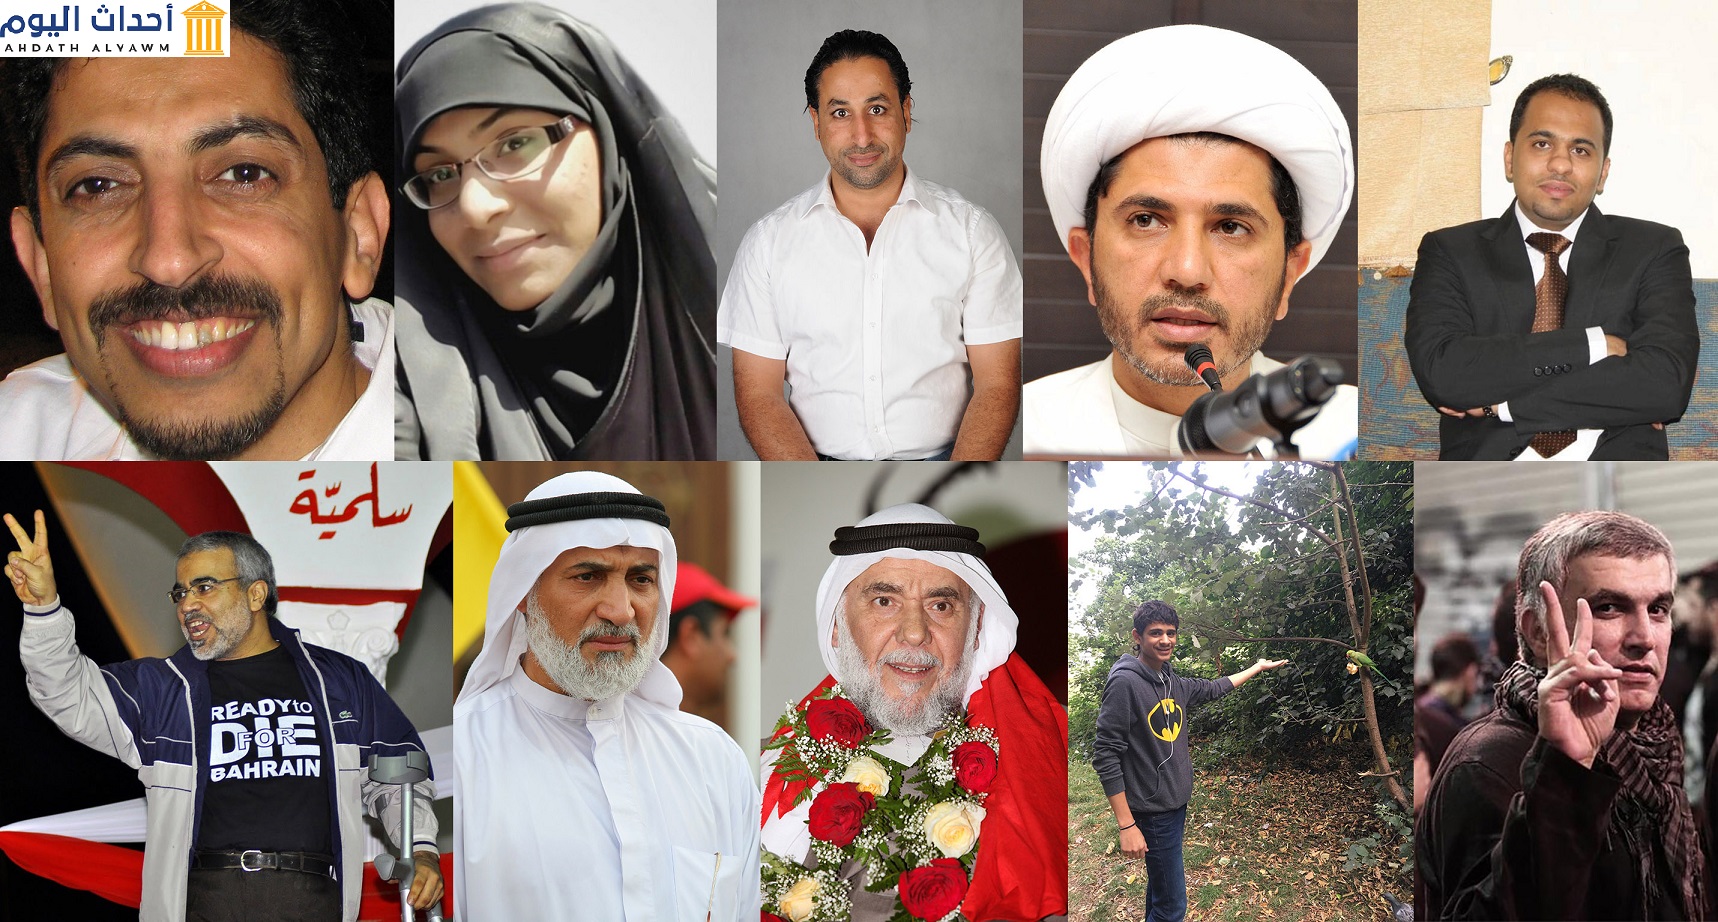 المدافعين الحقوقيين والنشطاء المسجونين لدى السلطات البحرينية